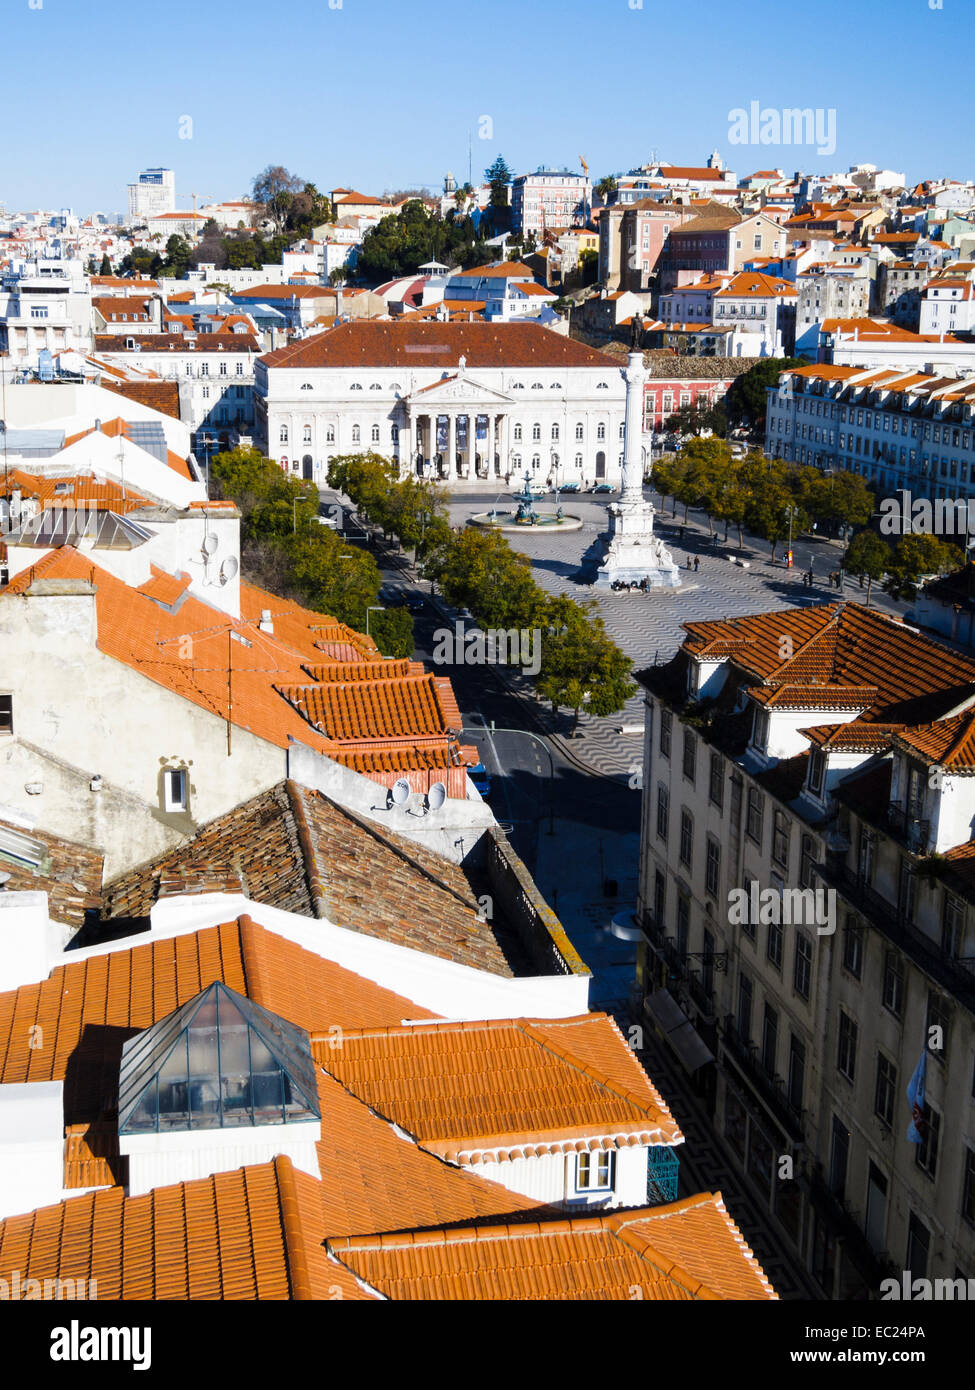 Vista sulla Praça de Dom Pedro IV (Piazza Rossio) da Elevador de Santa Justa. Lisbona, Portogallo. Foto Stock